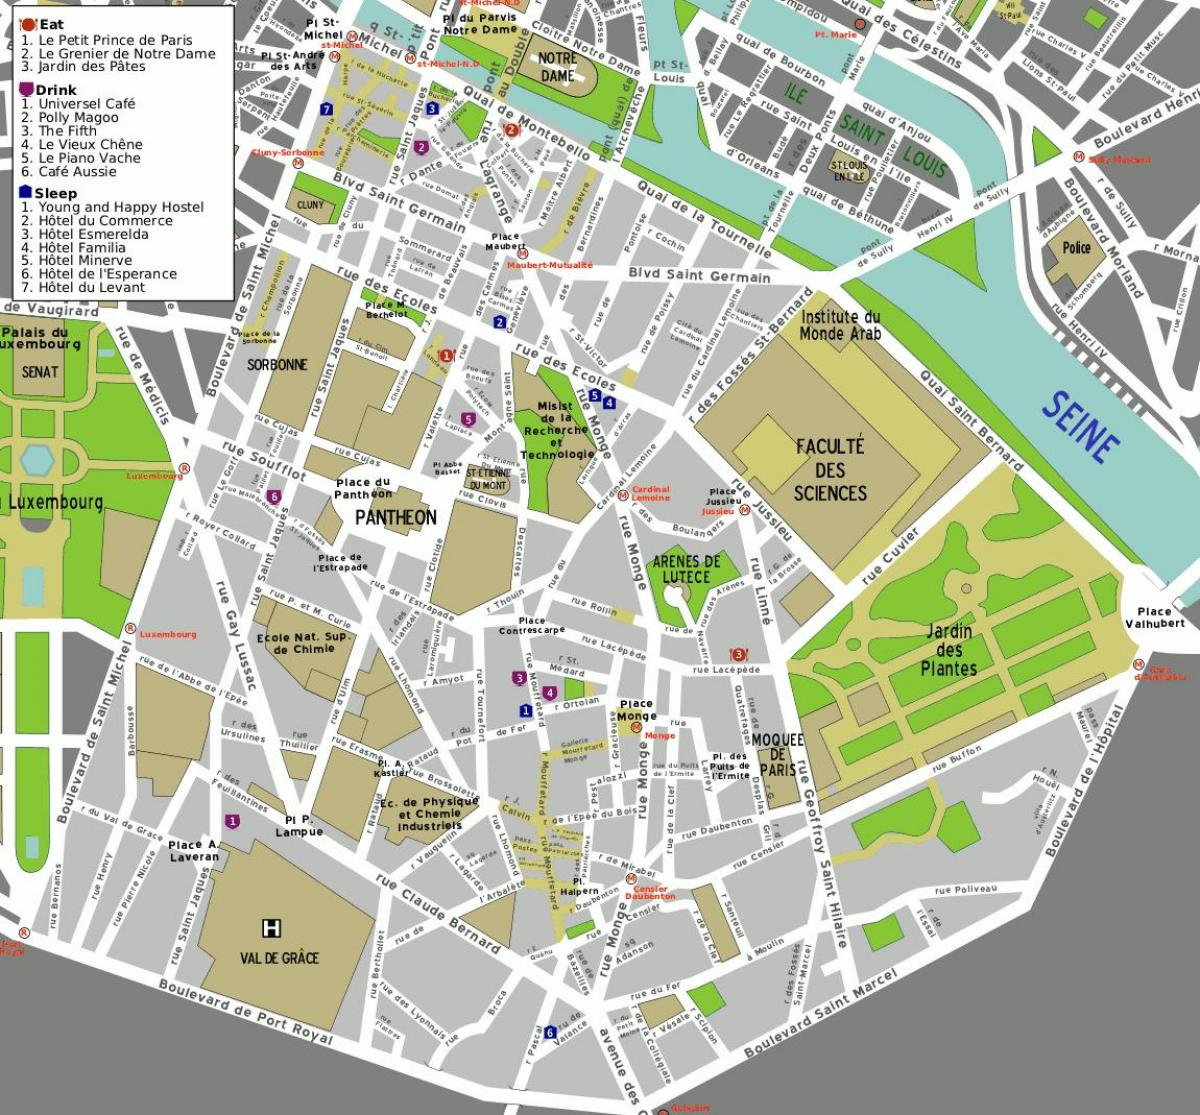 Mapa ng ika-5 arrondissement ng Paris